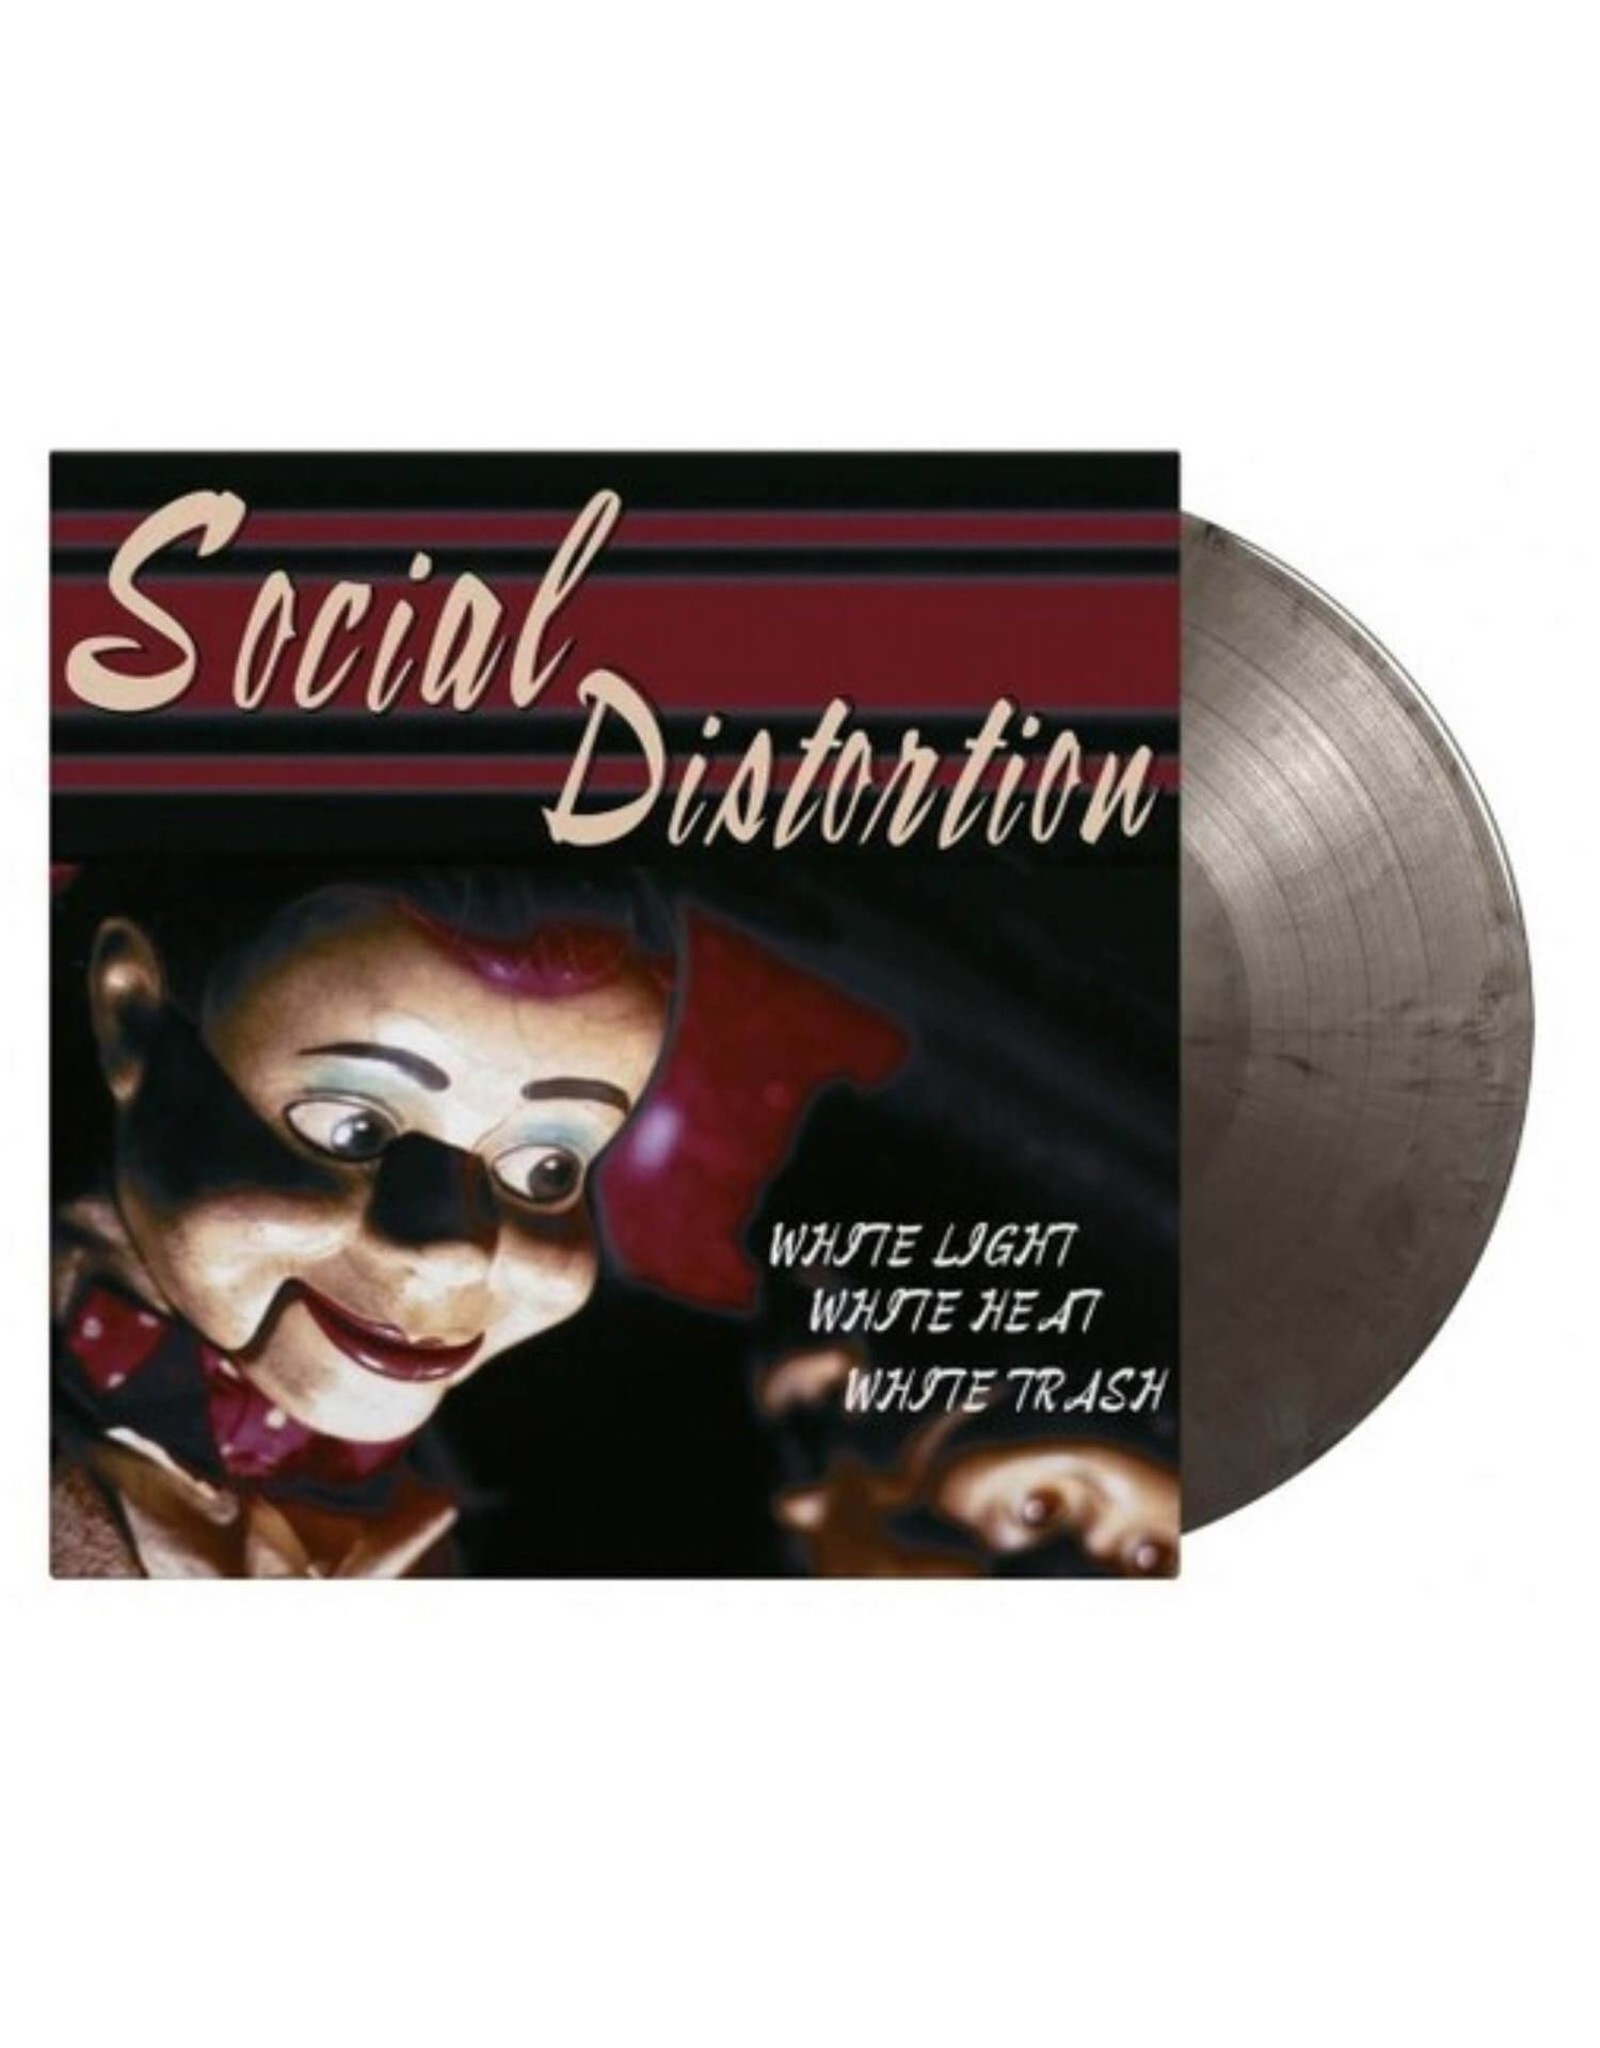 Social Distortion - White Light, White Heat, White Trash (Music On Vinyl) [Marble Vinyl]